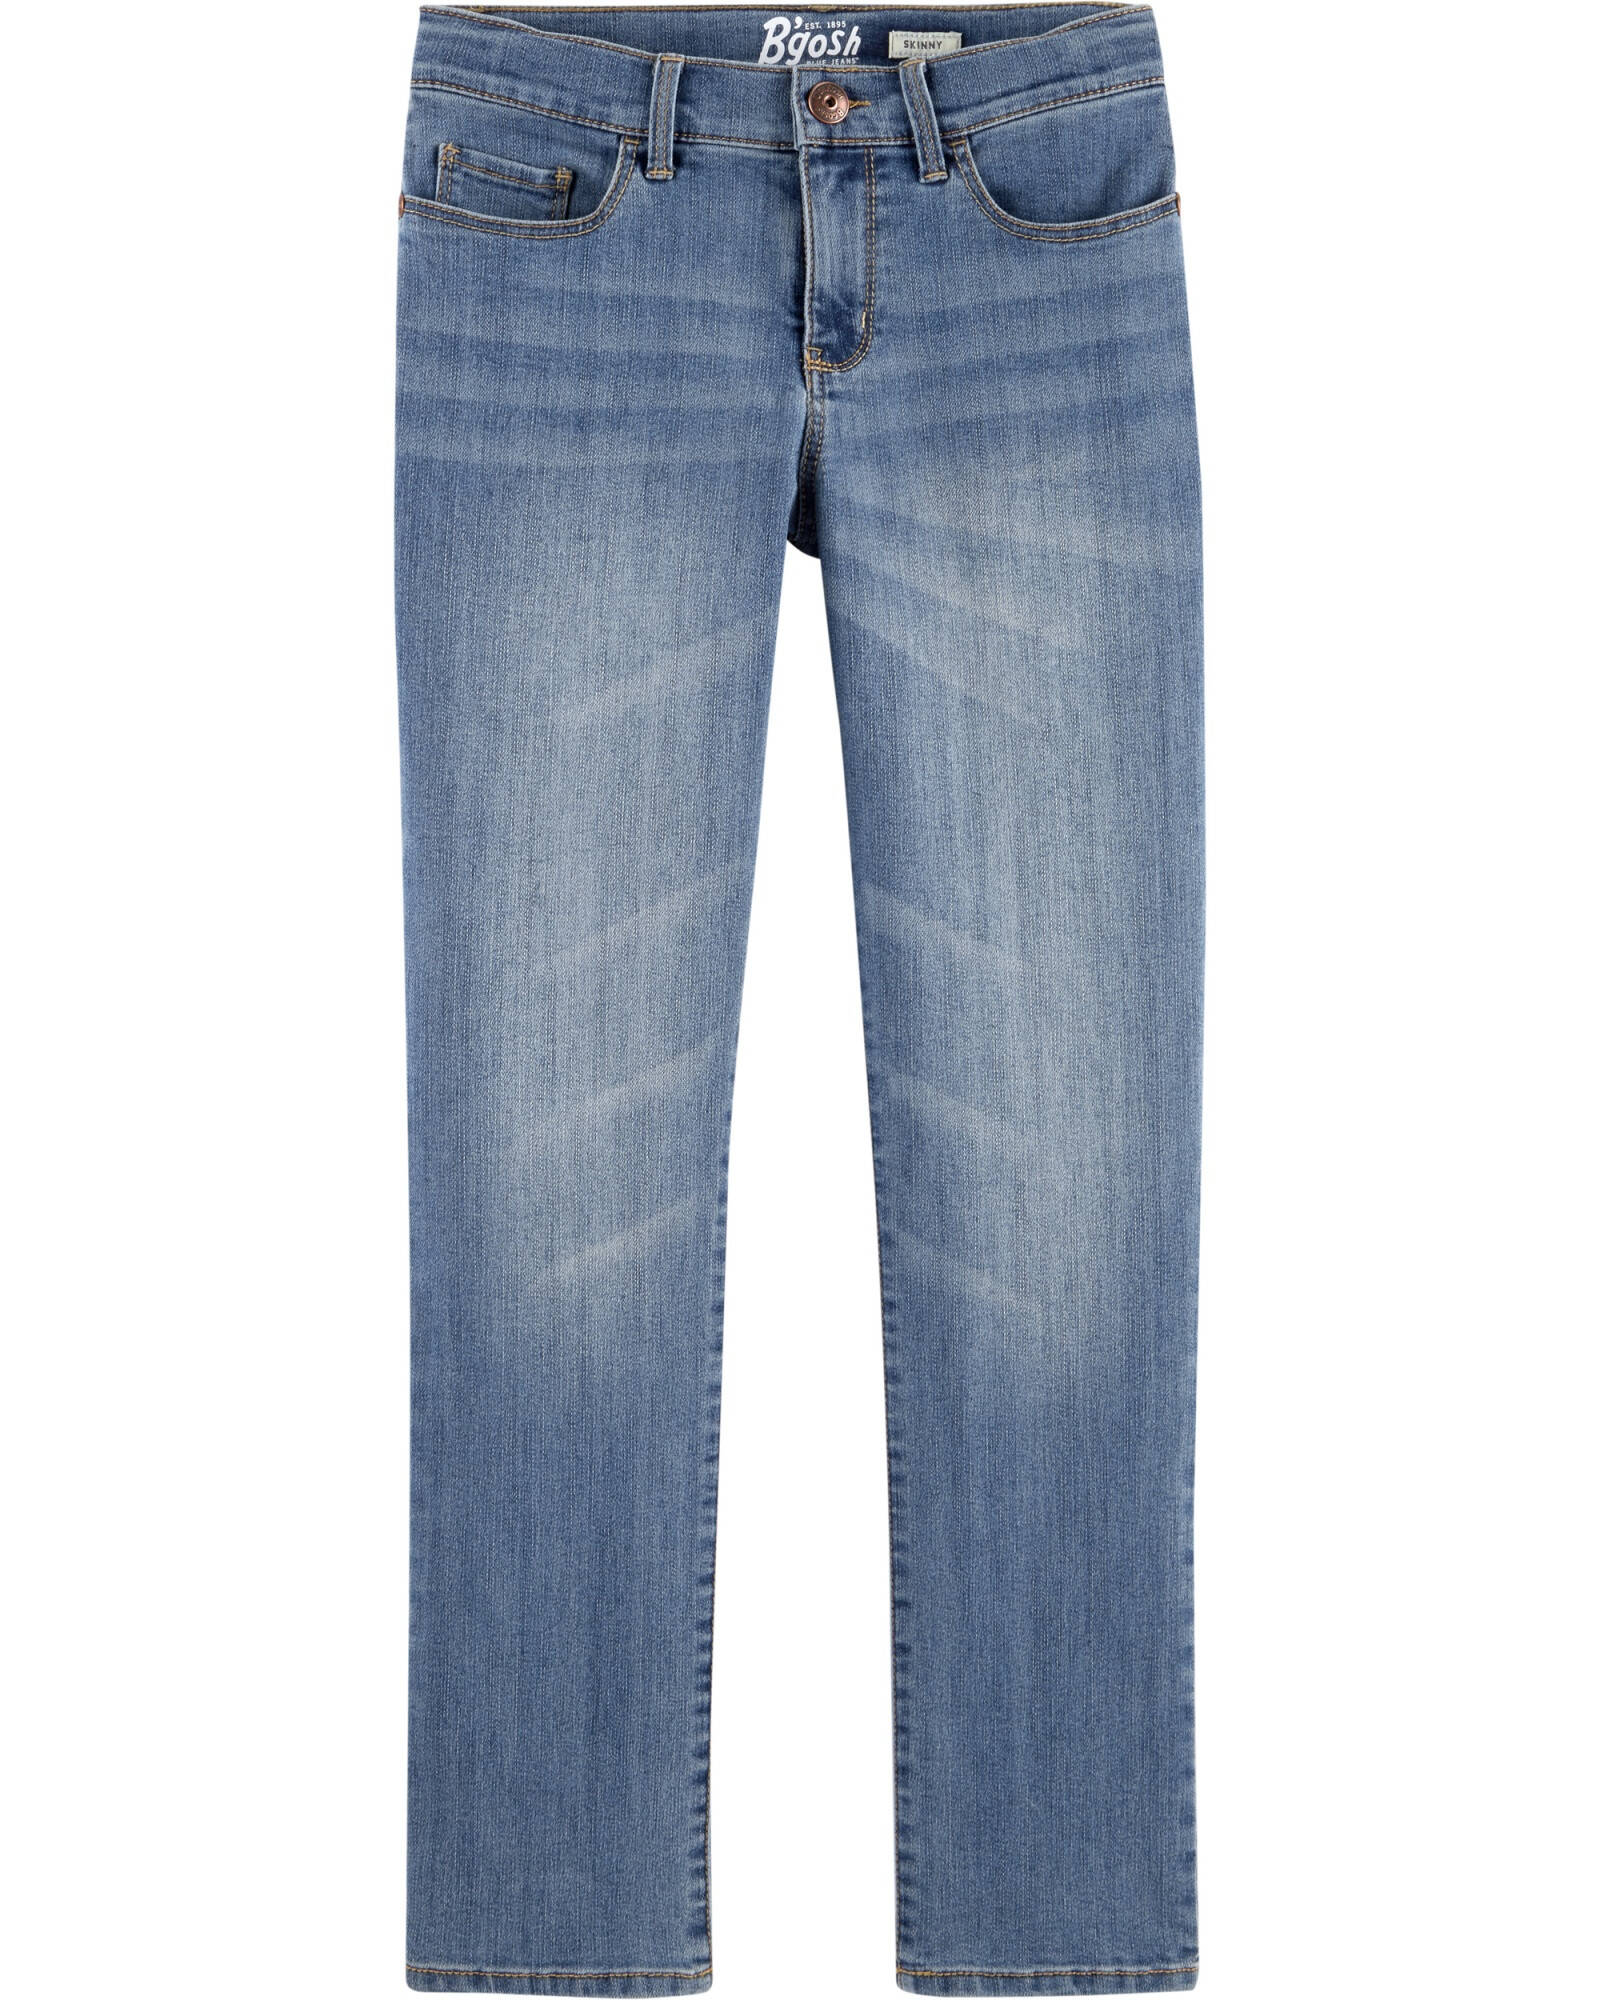 Pantalón de jean clásico lavado. Talles 5T-14 Sin color